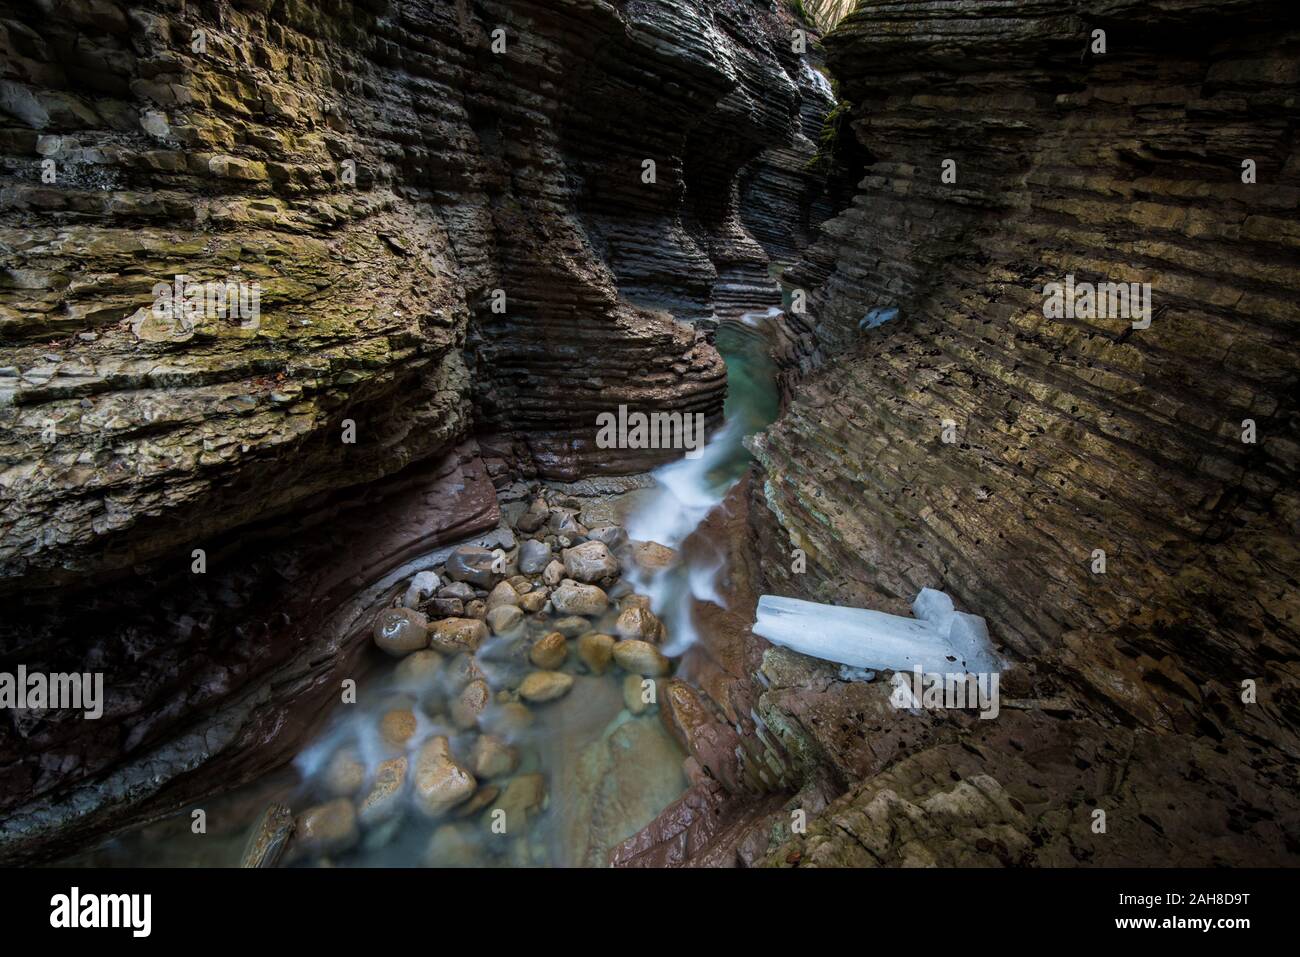 Ampia vista angolare dell'interno di un canyon in arenaria rossa con un ruscello che scorre sul fondo Foto Stock